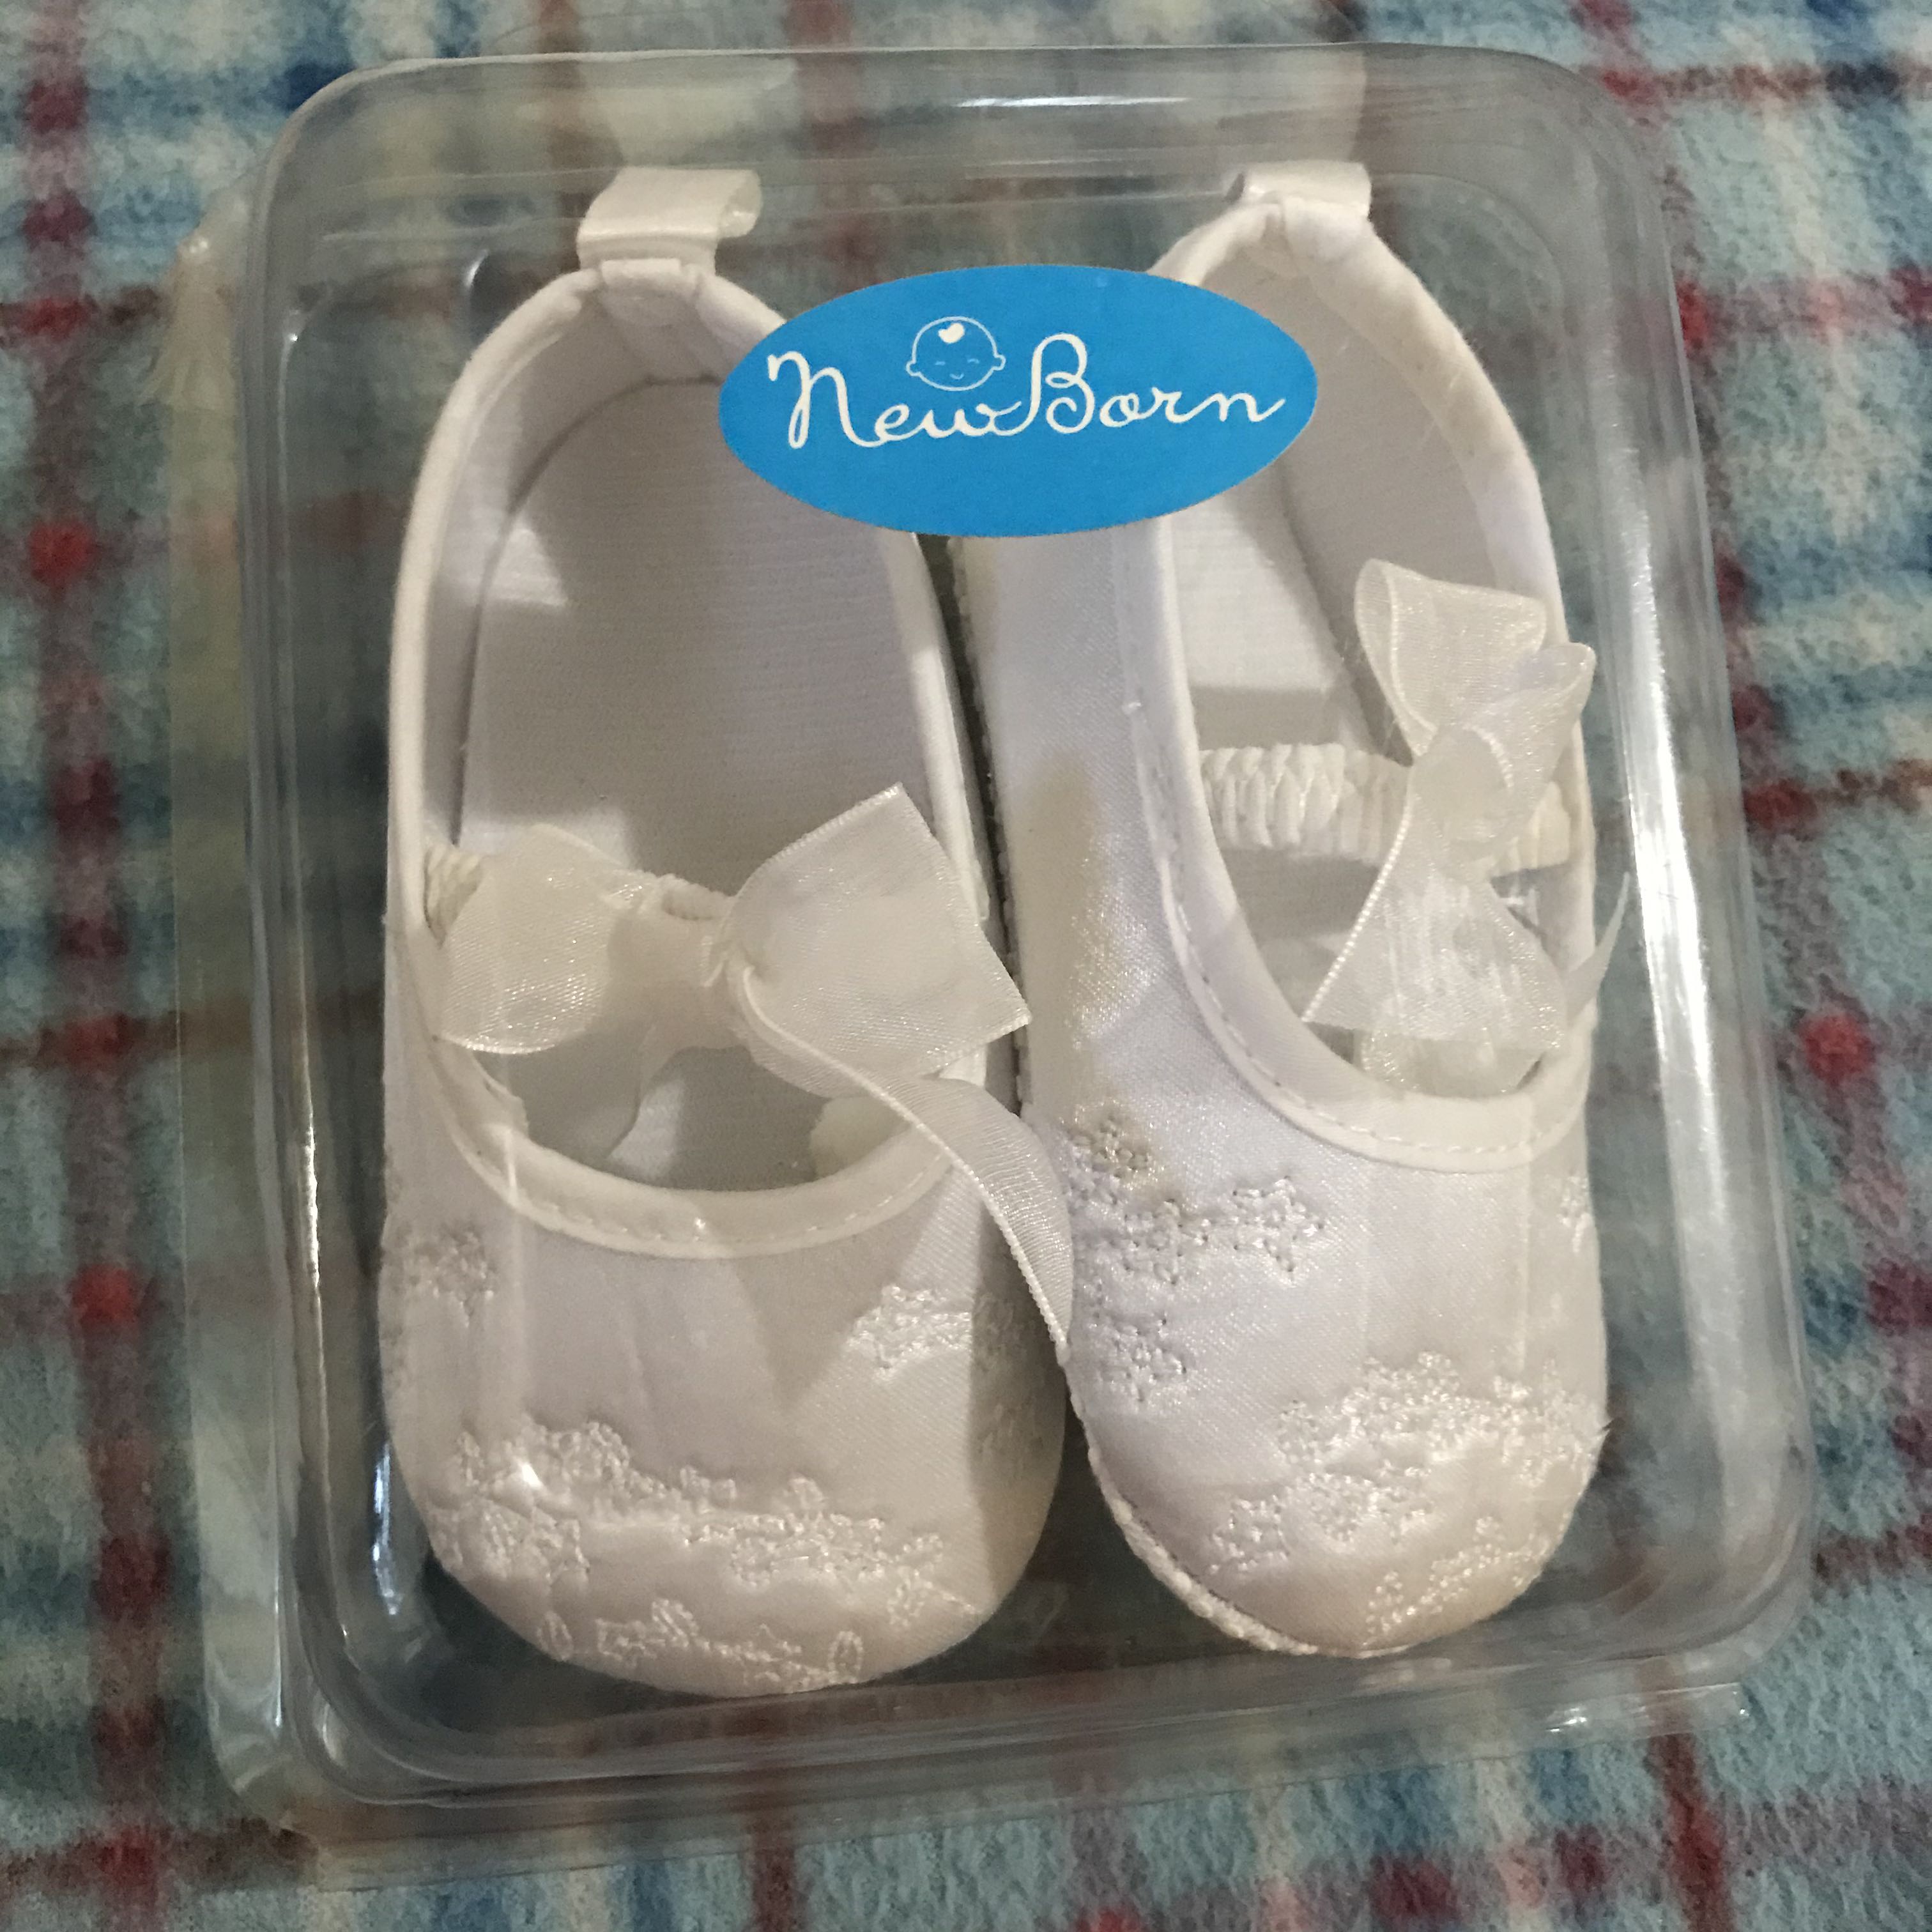 newborn white shoes girl